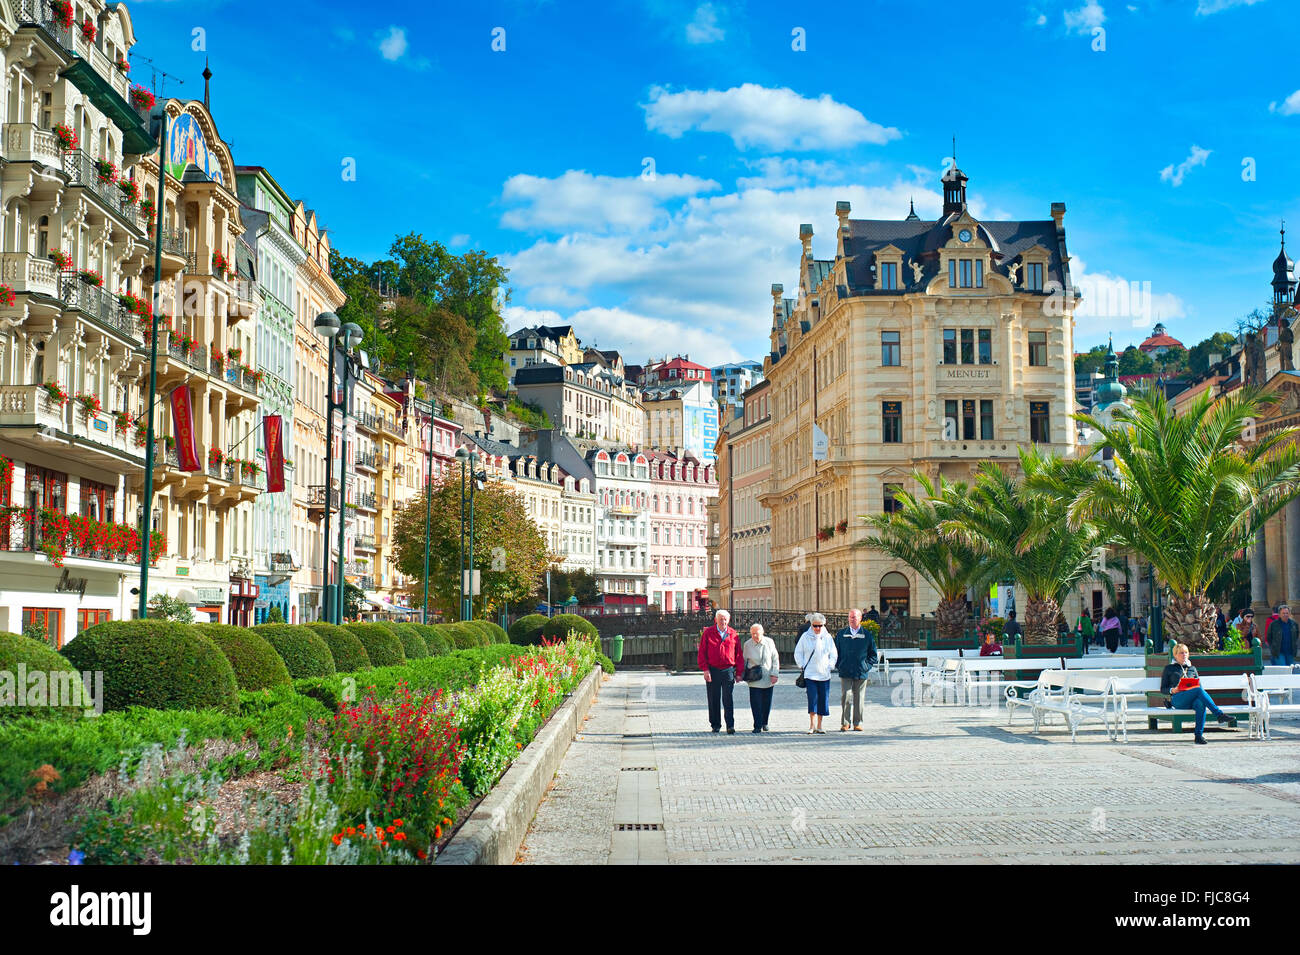 Menschen zu Fuß entlang Thermalquellen Kolonnade in Karlovy Vary/Karlsbad. Stockfoto